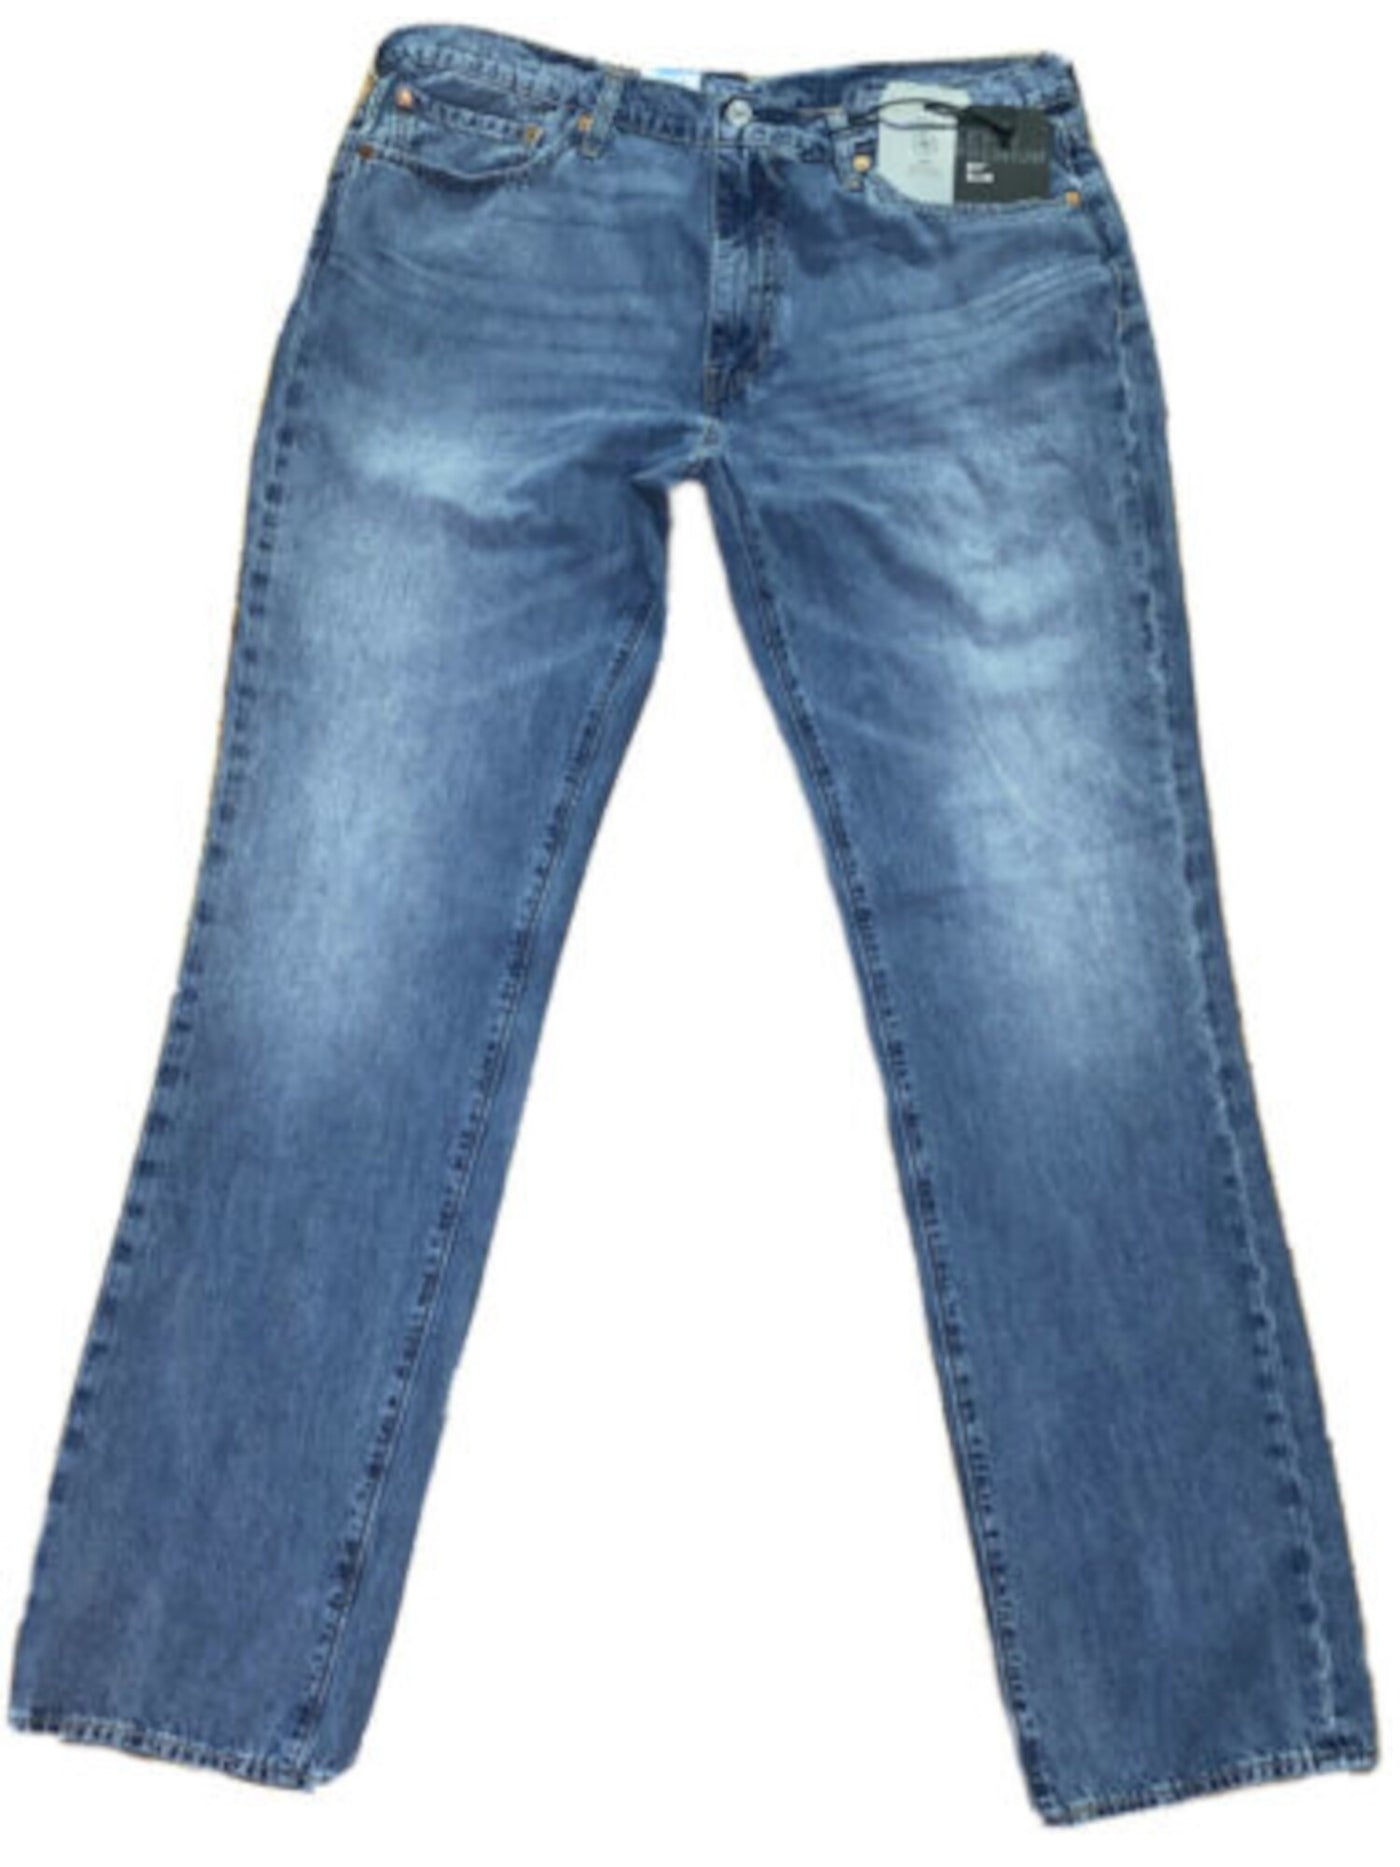 LEVI'S Mens Blue Stretch, Slim Fit Cotton Blend Denim Jeans W30/ L32